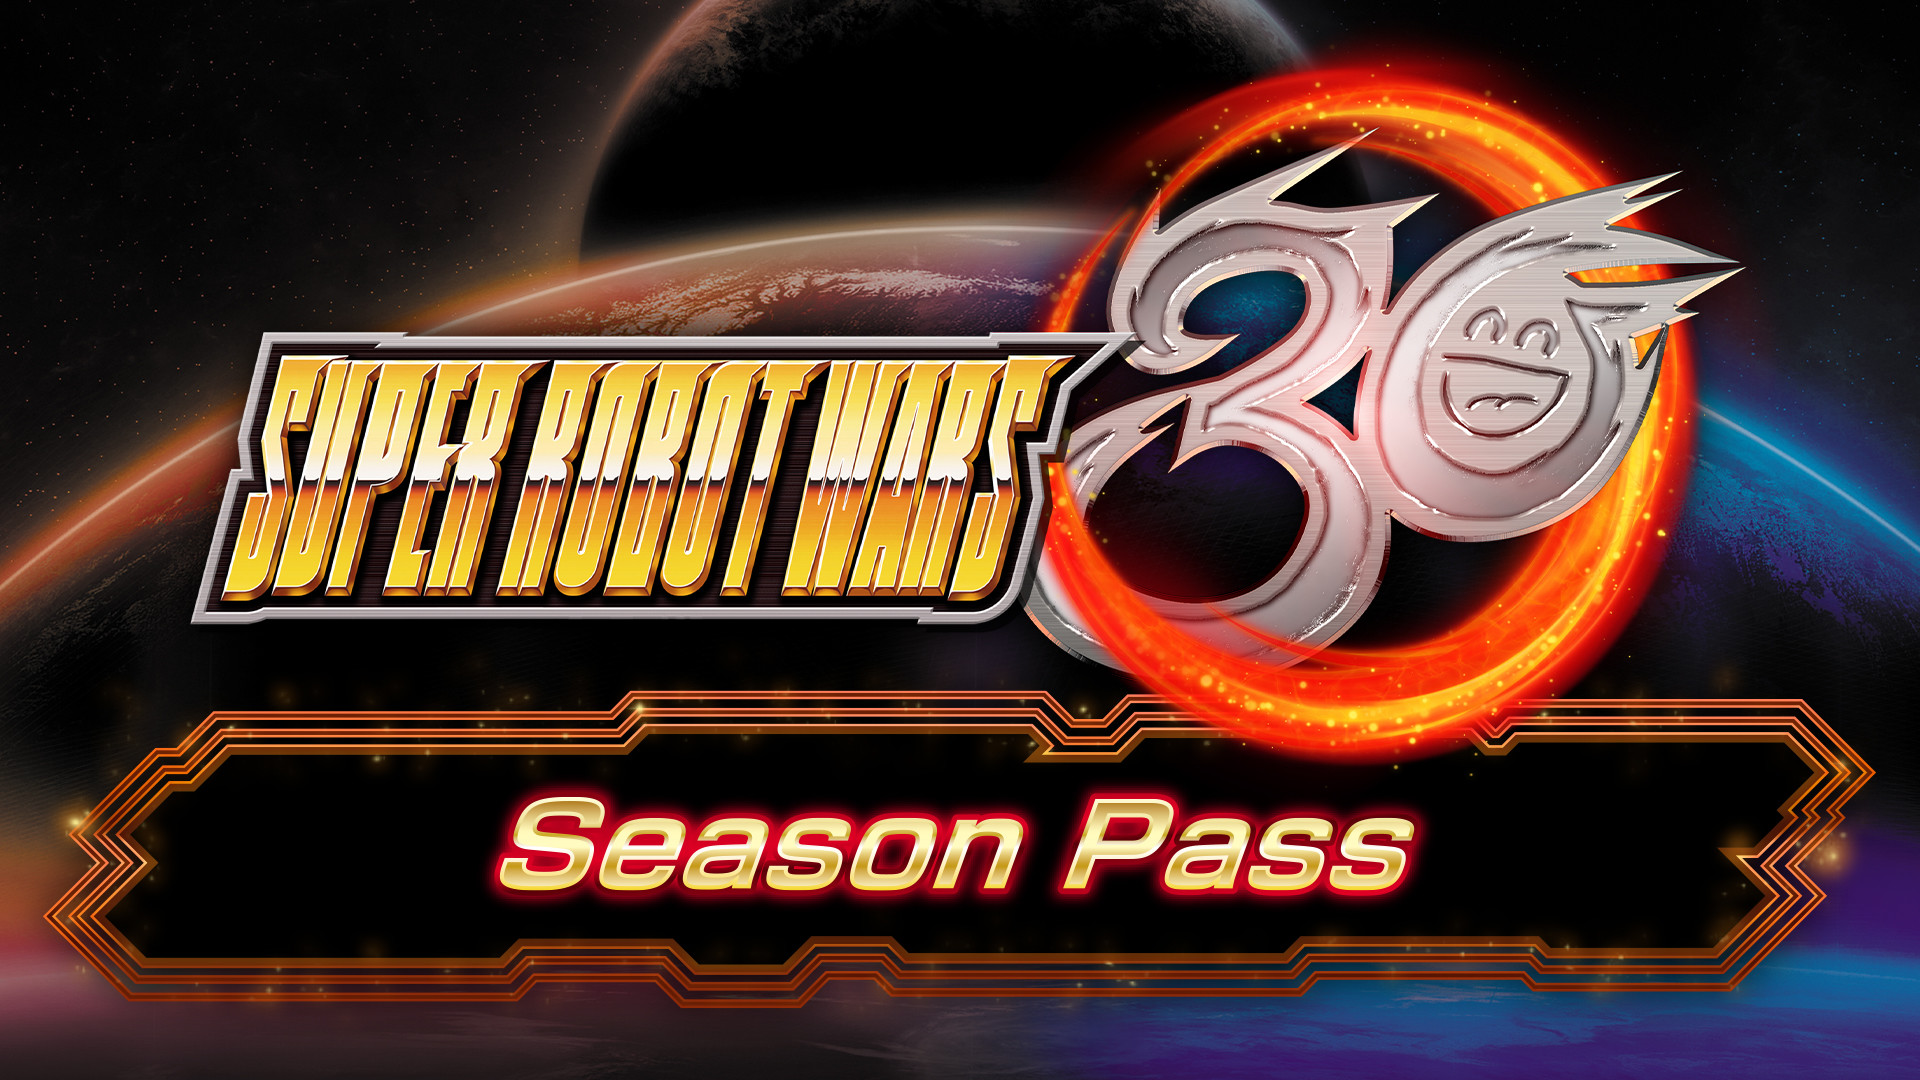 Super Robot Wars 30 - Season Pass Steam CD Key, 13.54$